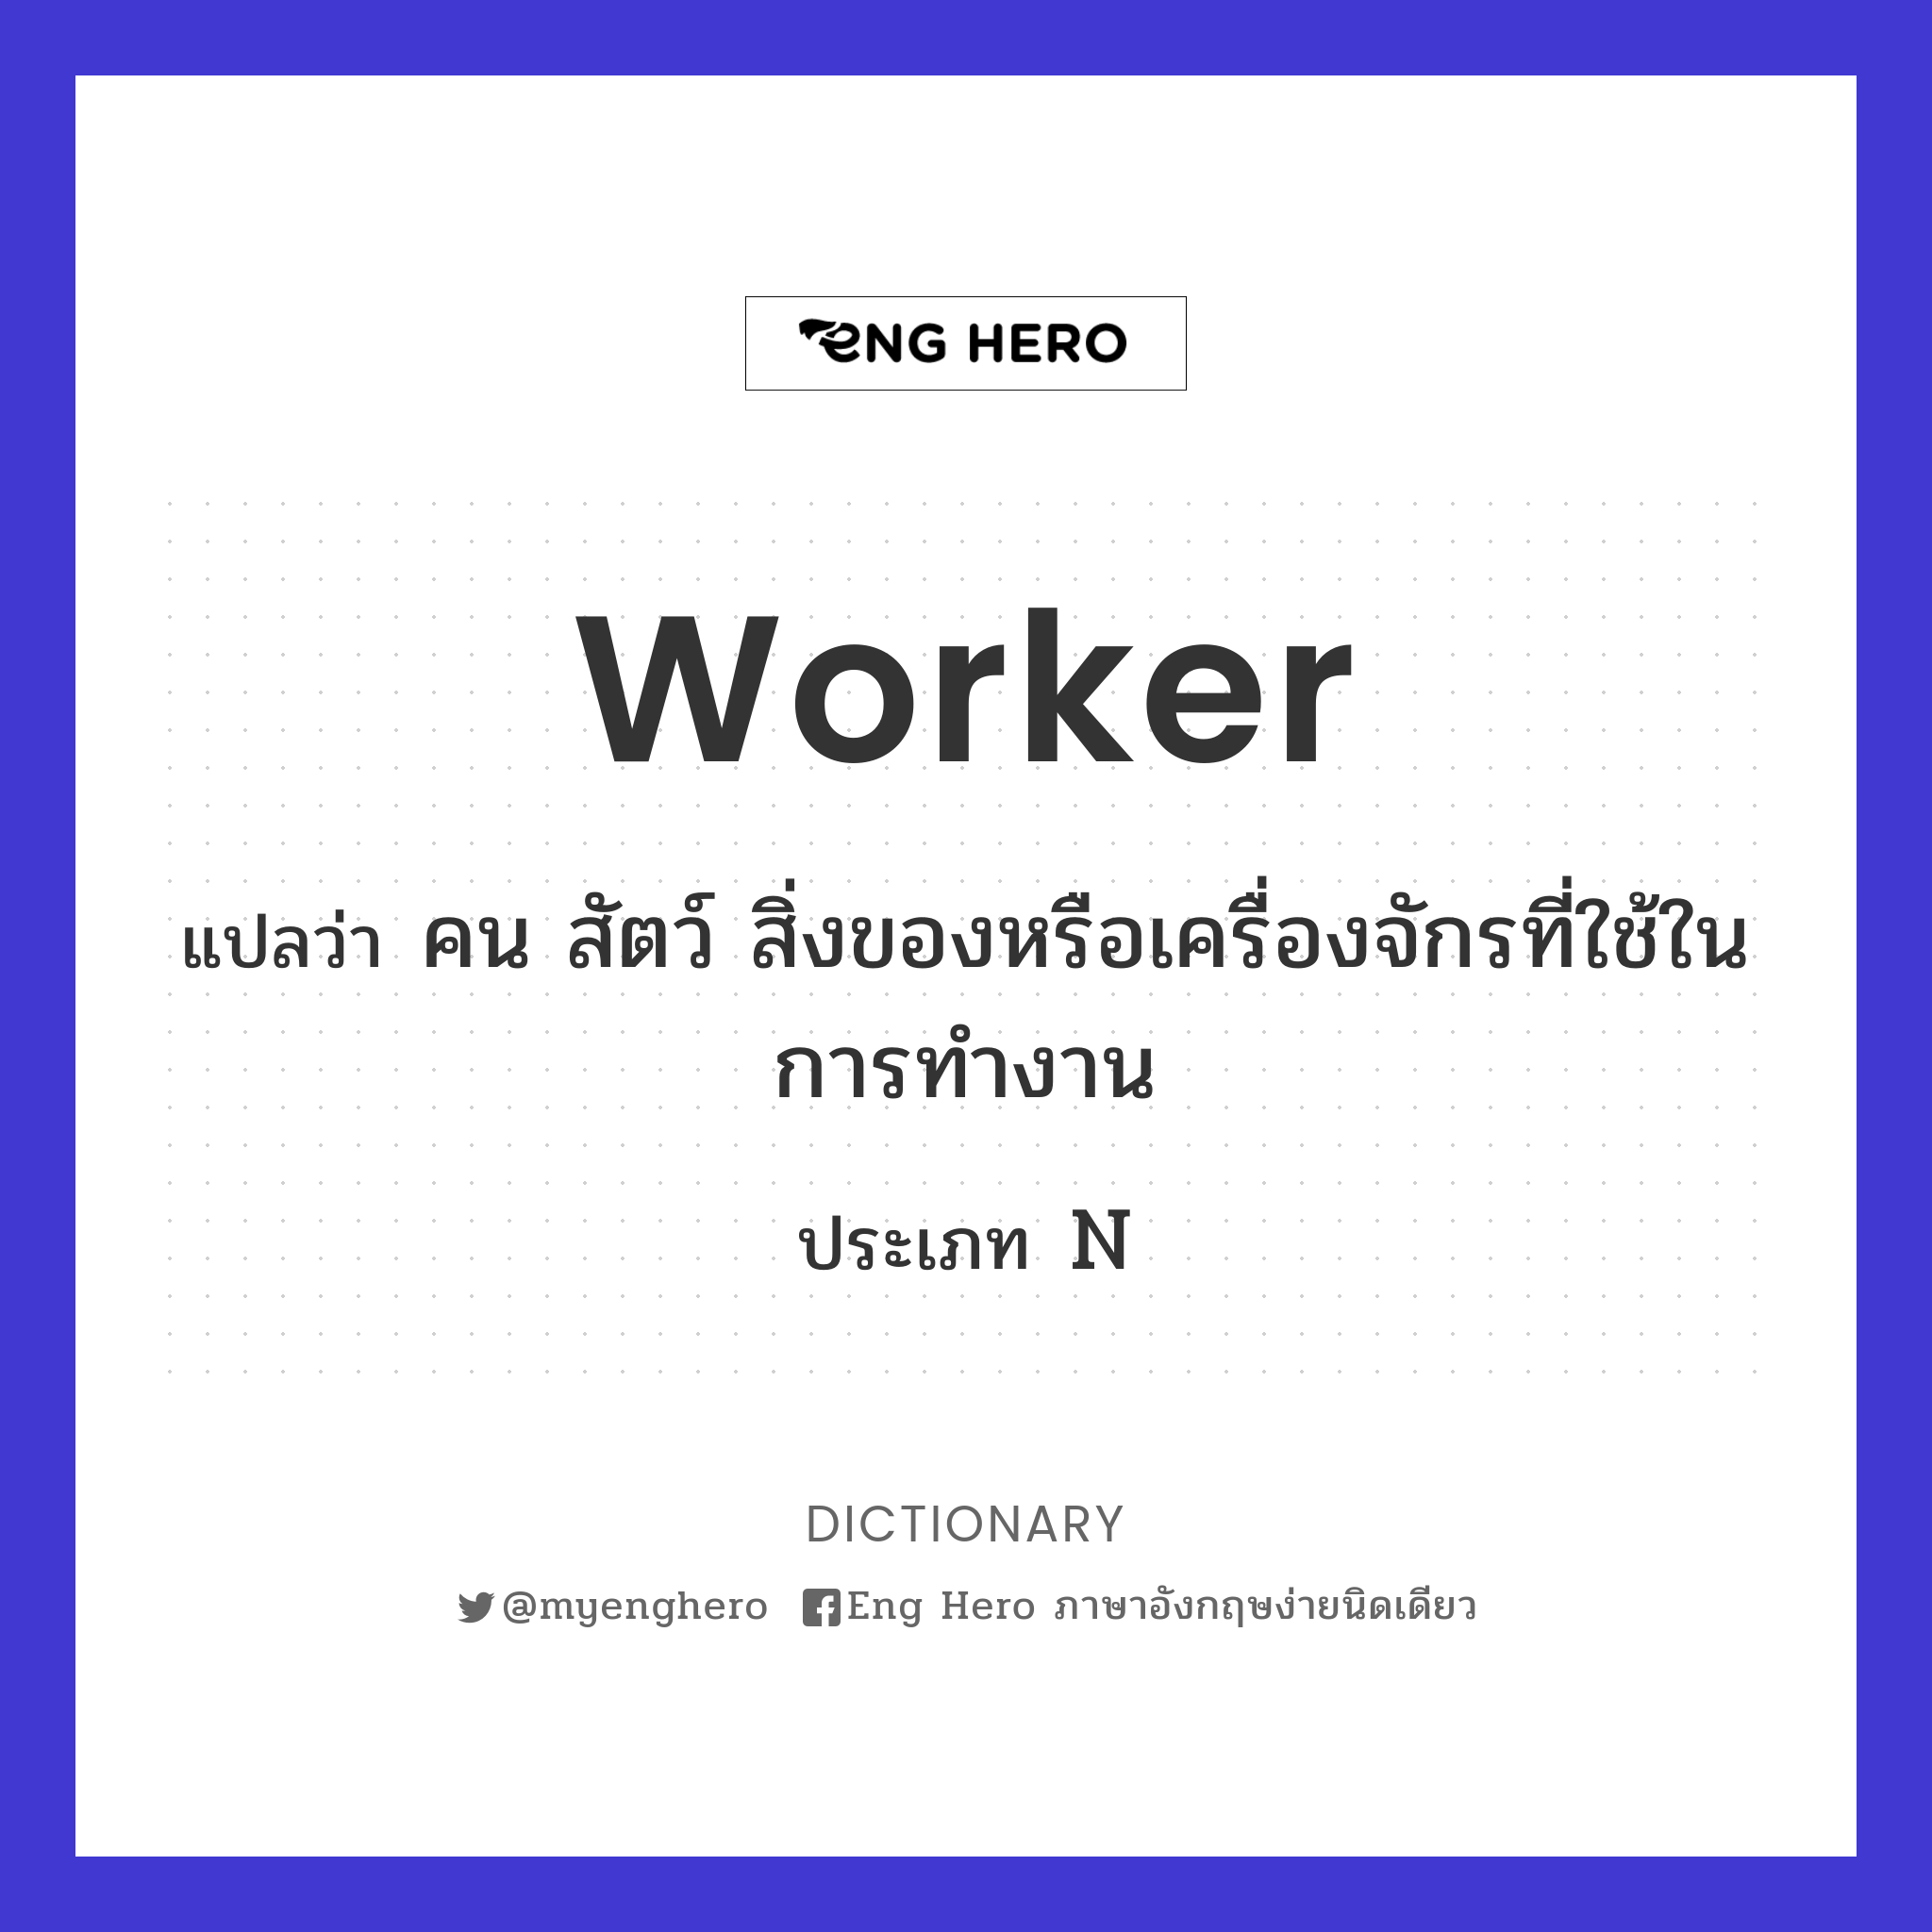 worker